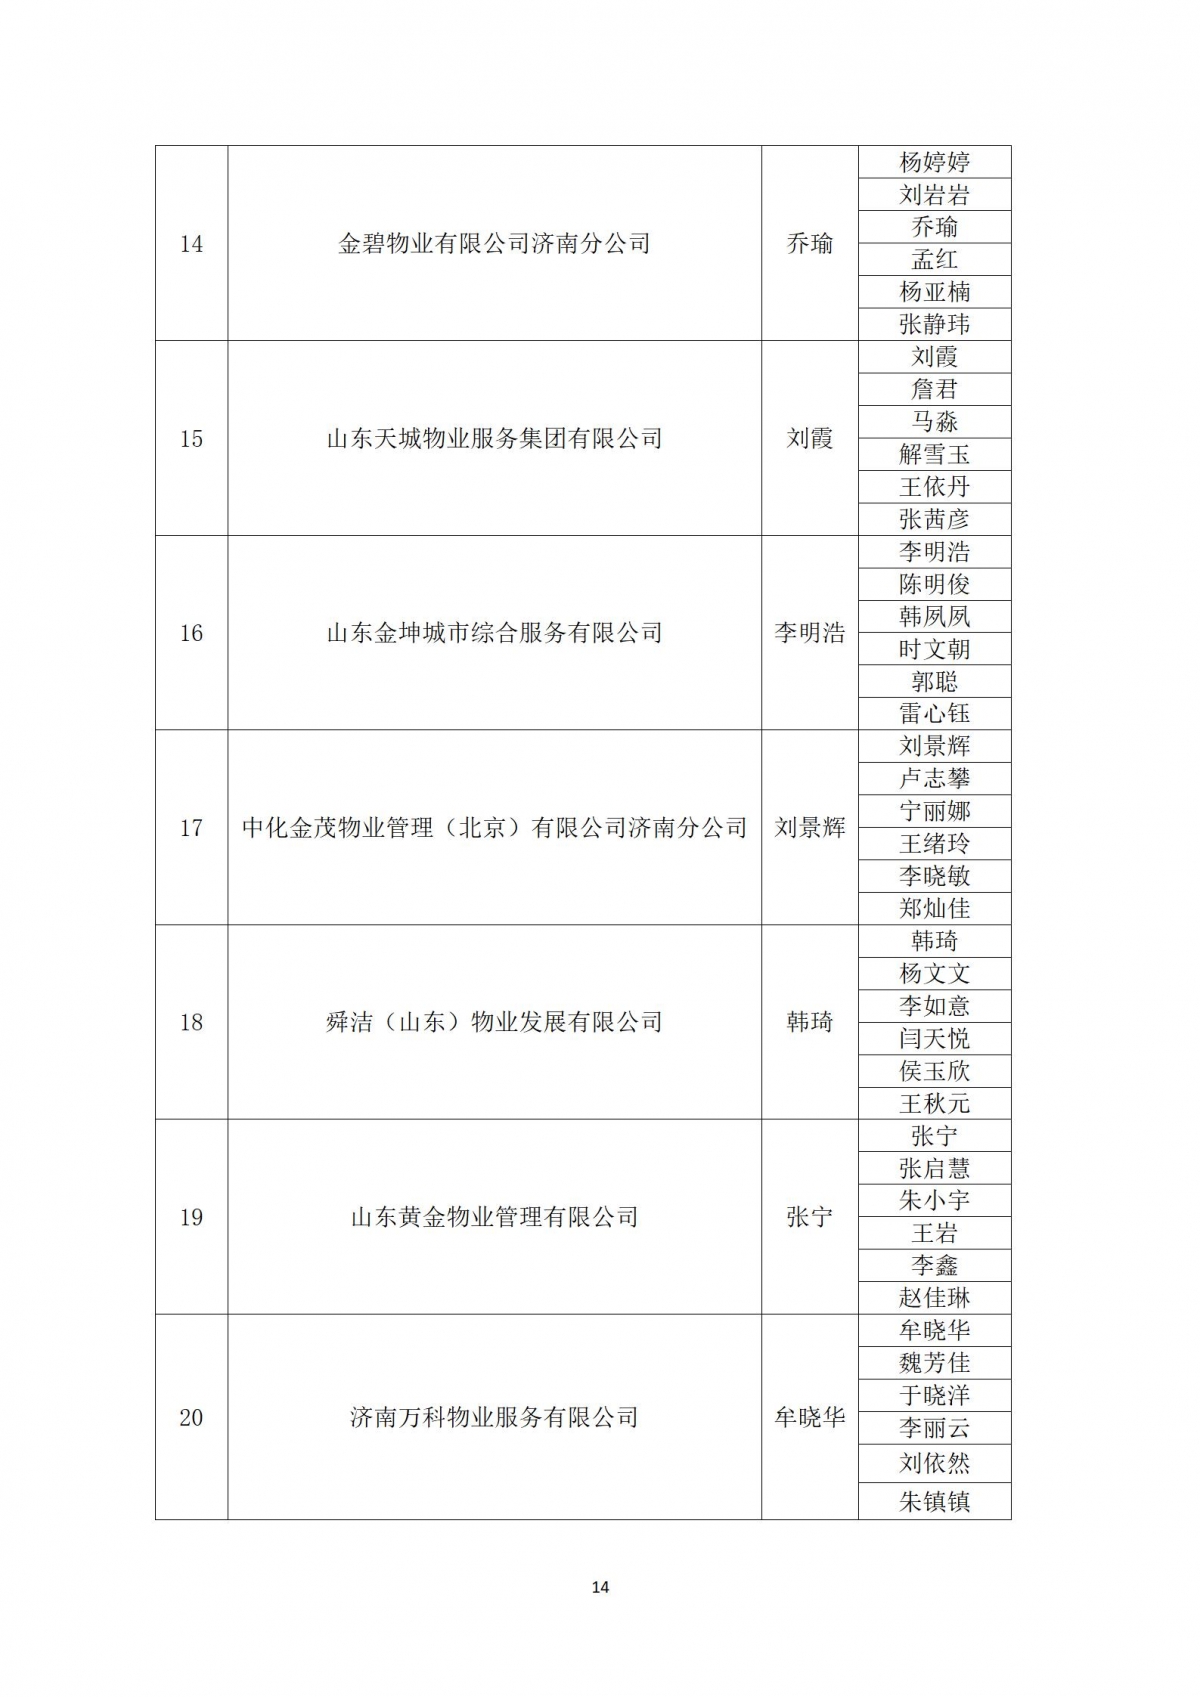 关于“天城杯”第七届济南市物业服务行业职业技能竞赛选手名单的公示_14